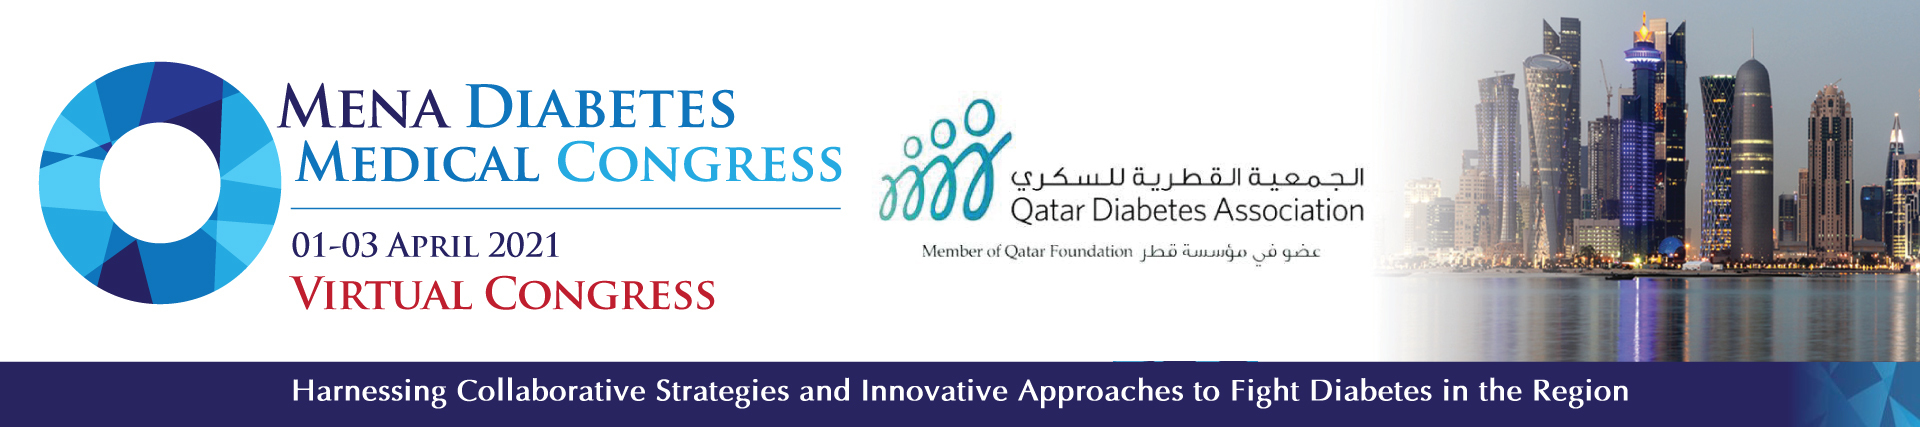 MENA Diabetes Medical Congress